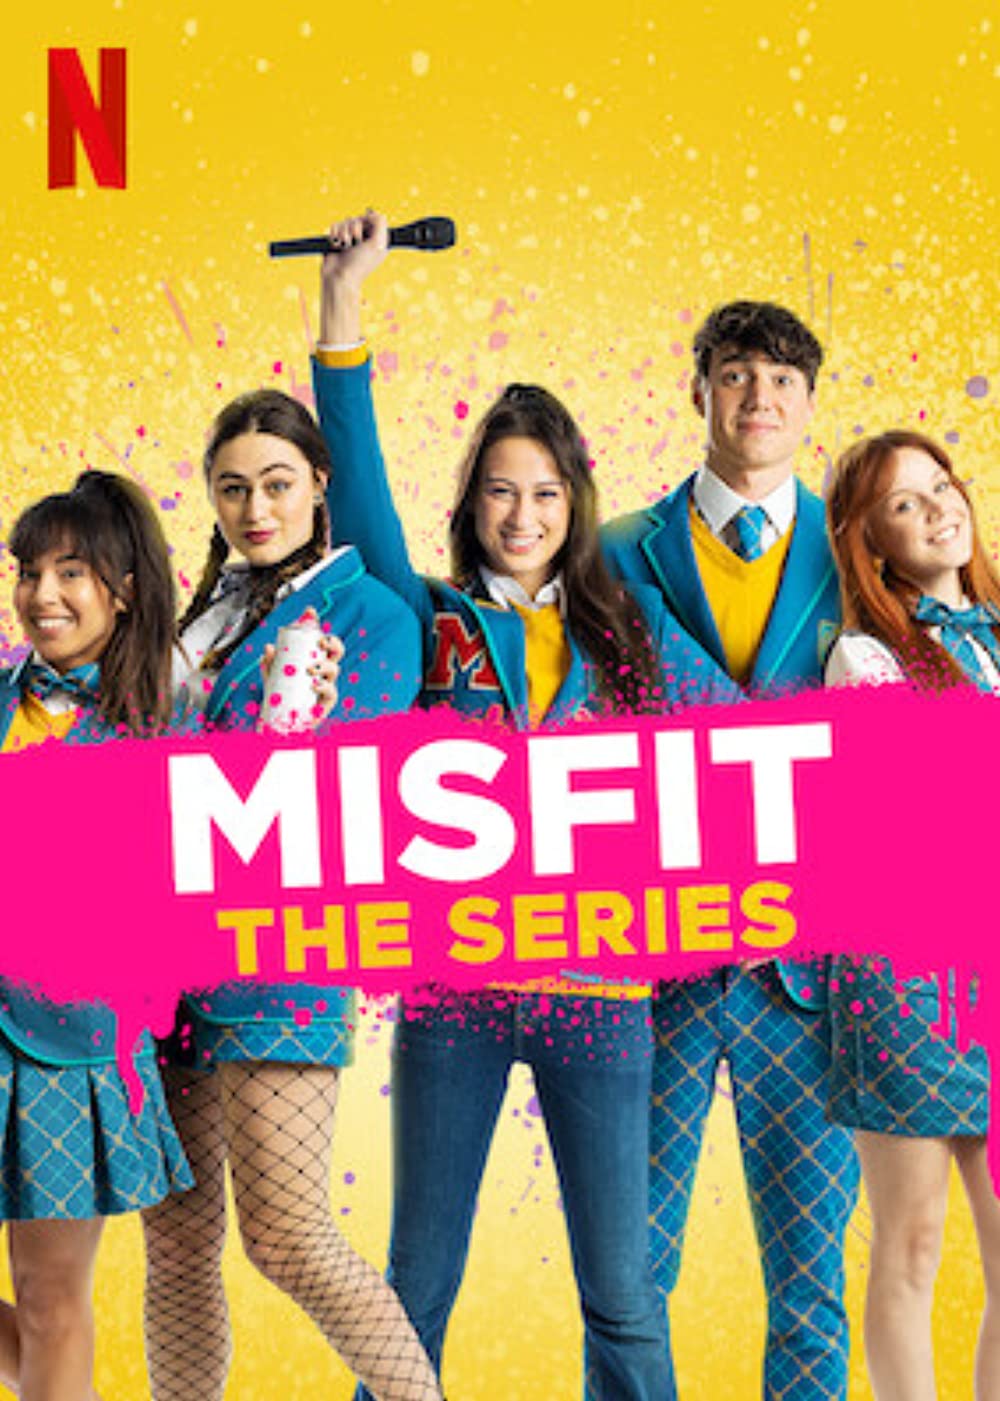 ดูหนังออนไลน์ฟรี MisFit The Series (2021) Episode3 มิสฟิช เดอะ ซีรี่ย์ ตอนที่ 3